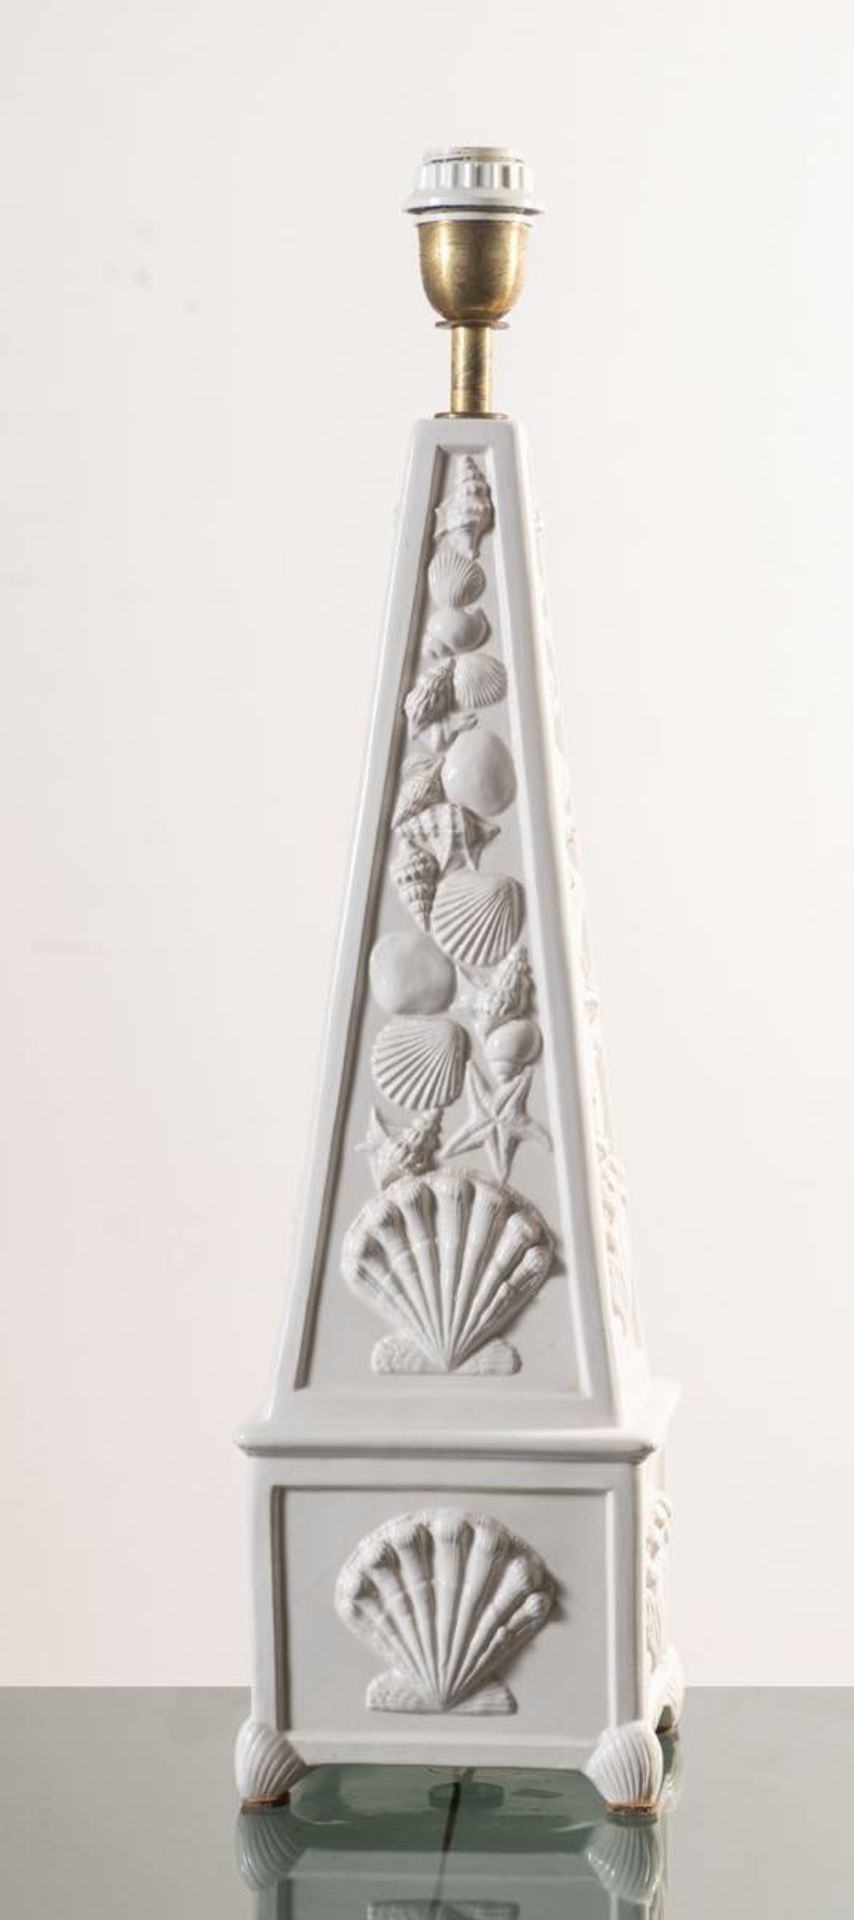 Lampada in ceramica a foggia di obelisco, Italia, Anni ‘70.Decorazione a conchiglie in rilievo su